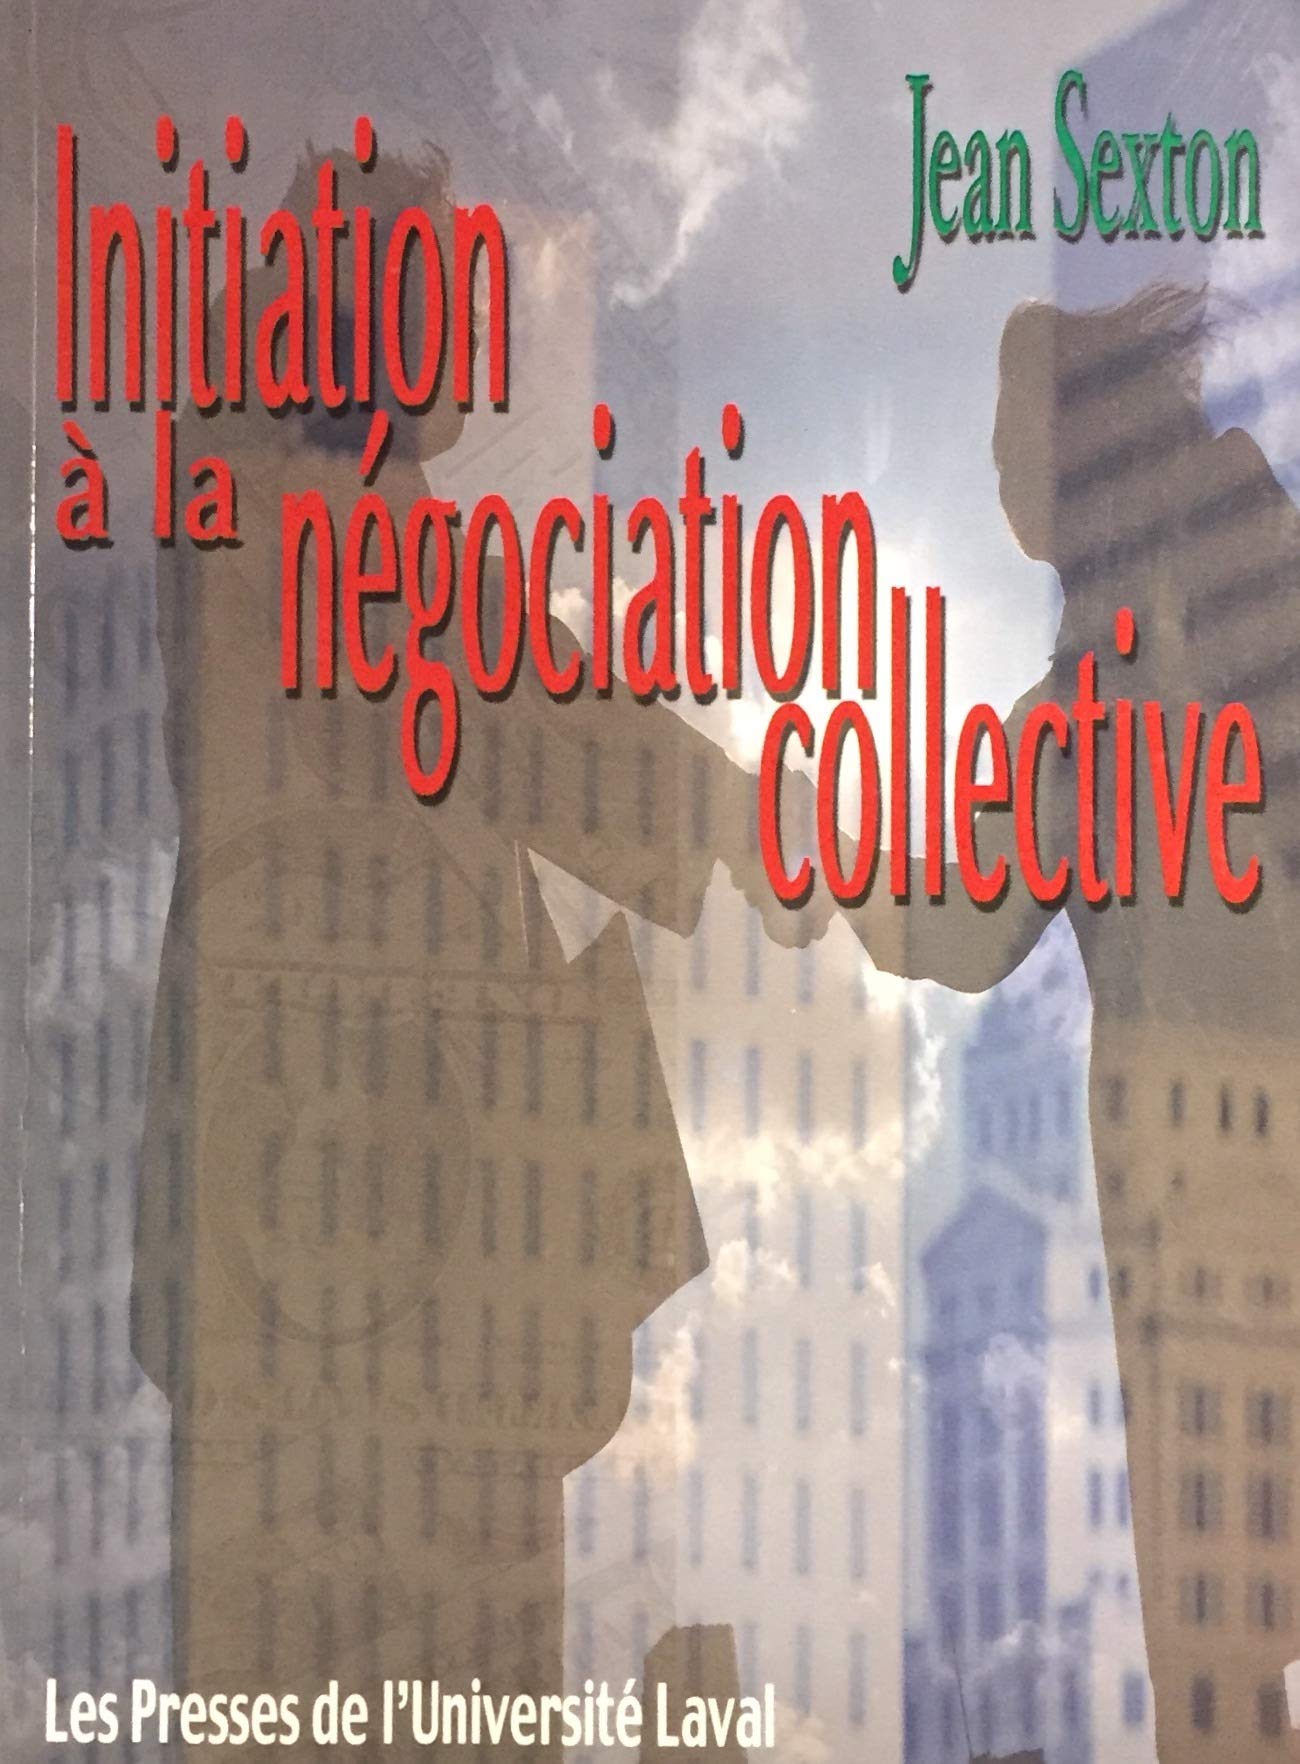 Livre ISBN 2763778402 Initiation à la négociation collective (Jean Sexton)